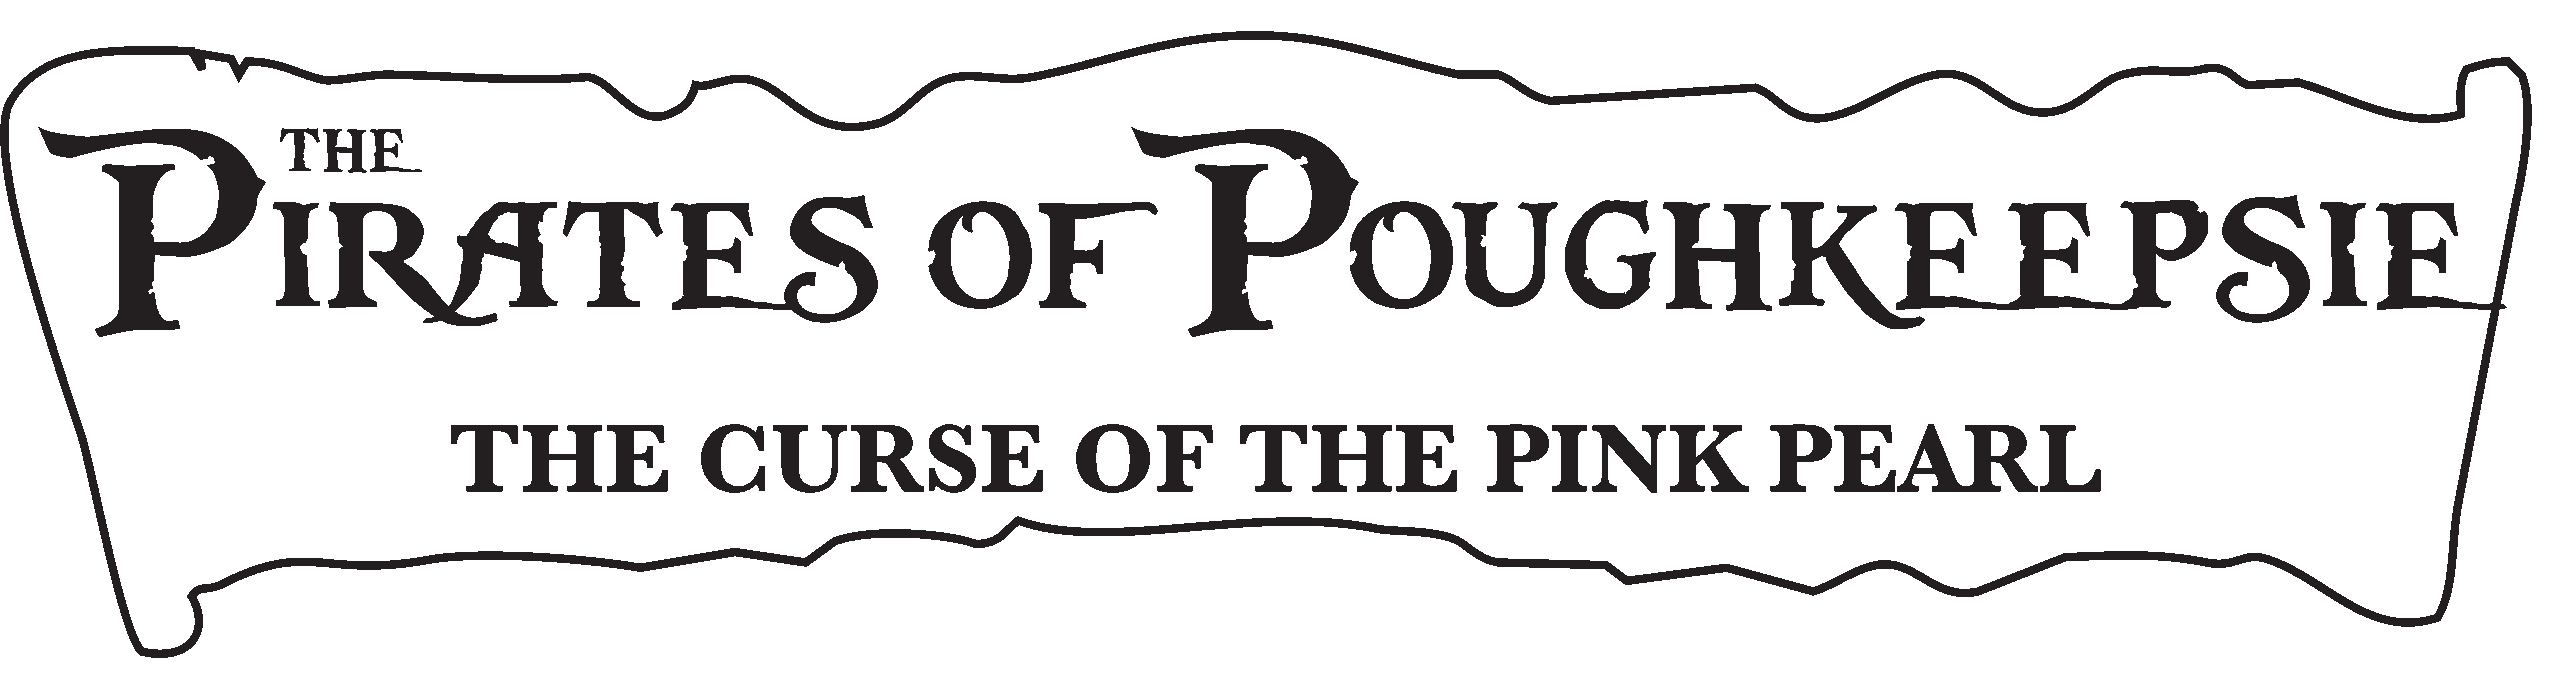 Pirates of Poughkeepsie